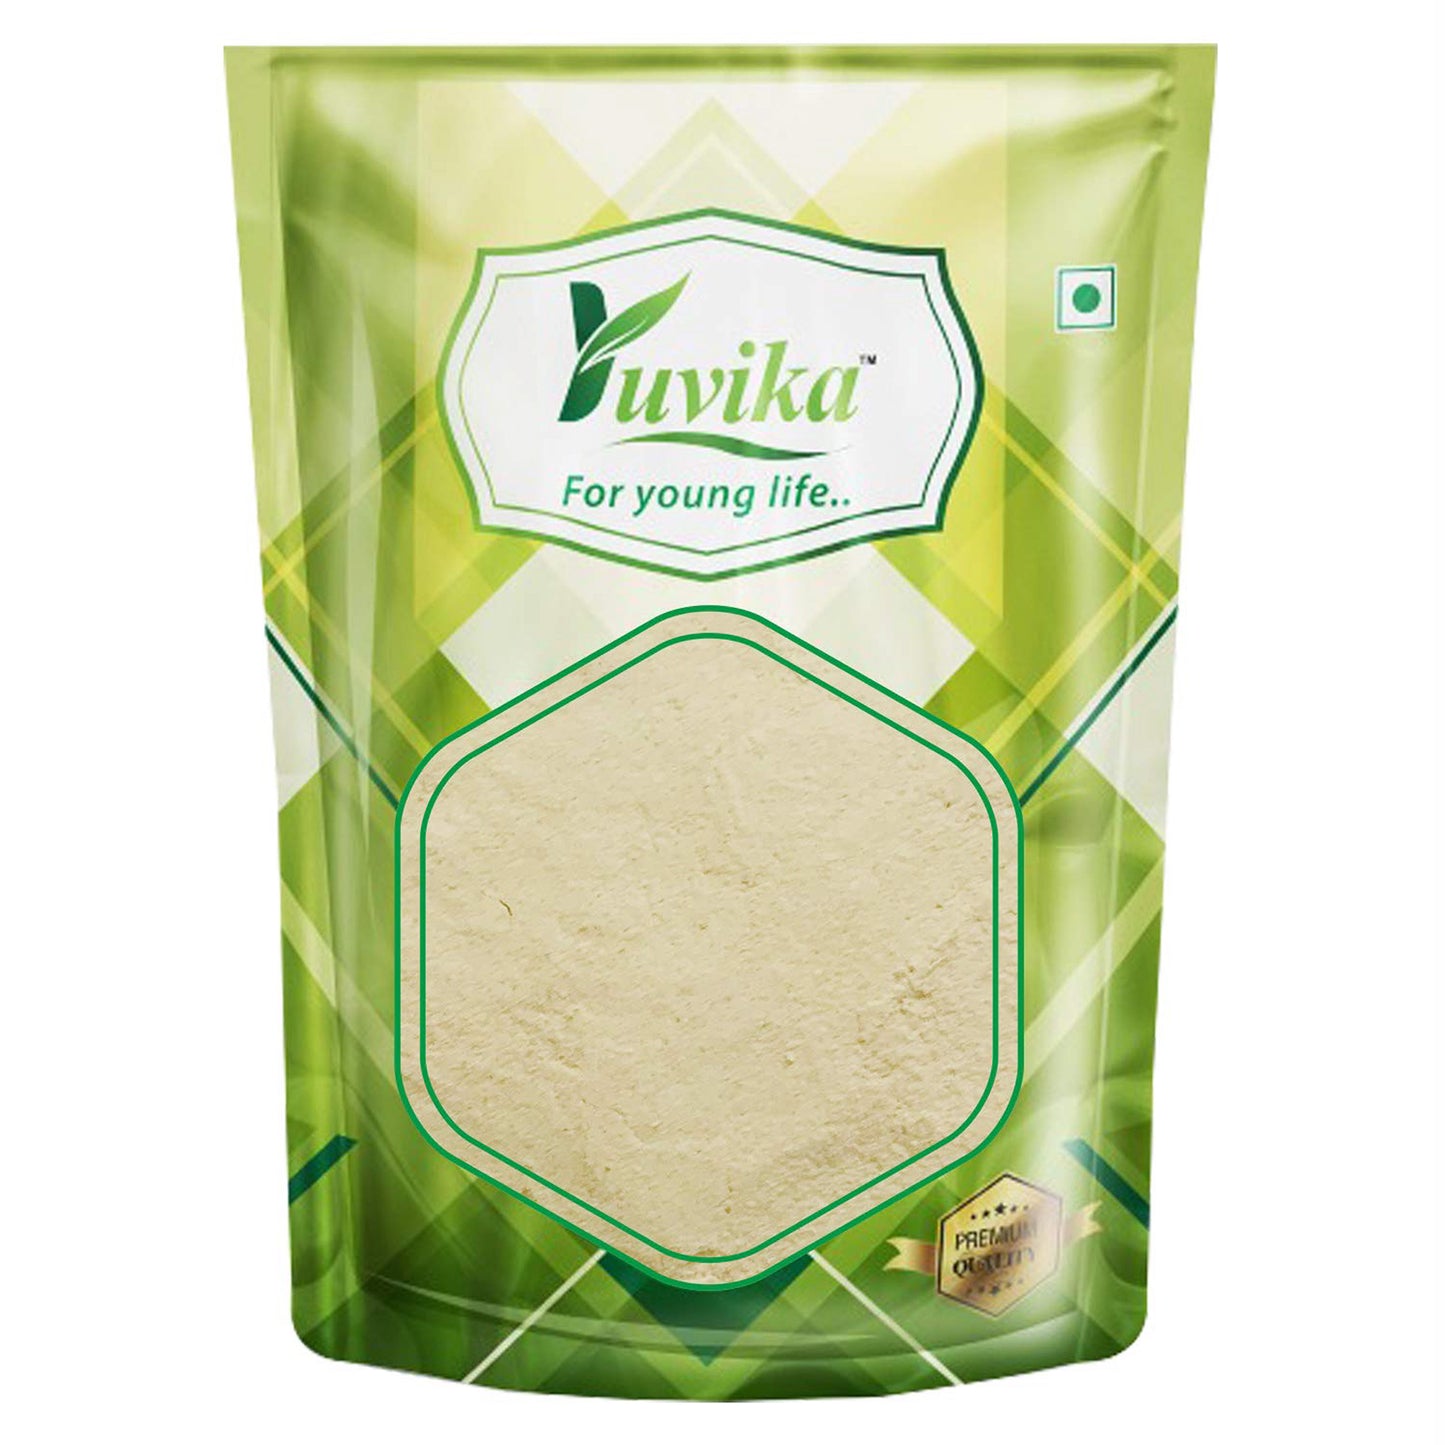 Green Coffee Beans Powder Decaffeinated & Unroasted Arabica Coffee Powder